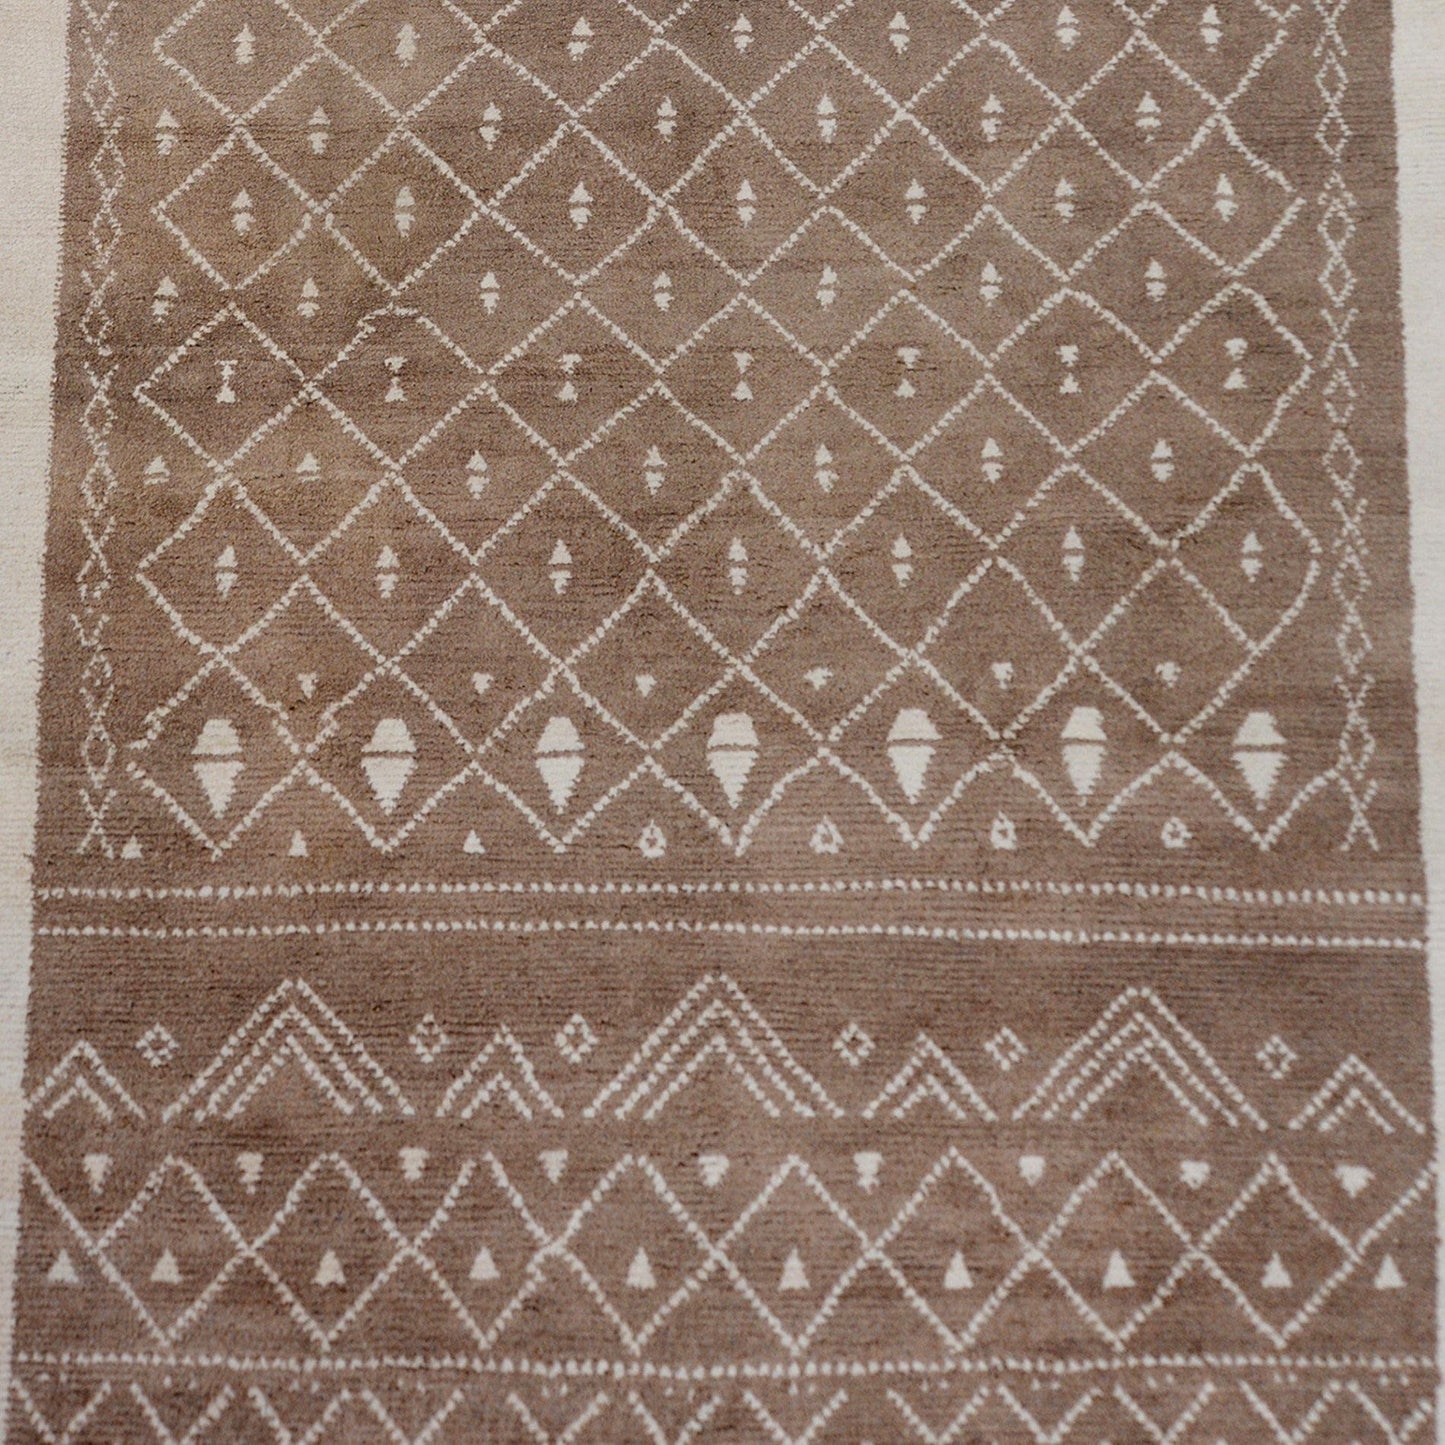 Brown Tribal Geometric Moroccan Area Rug 8x10